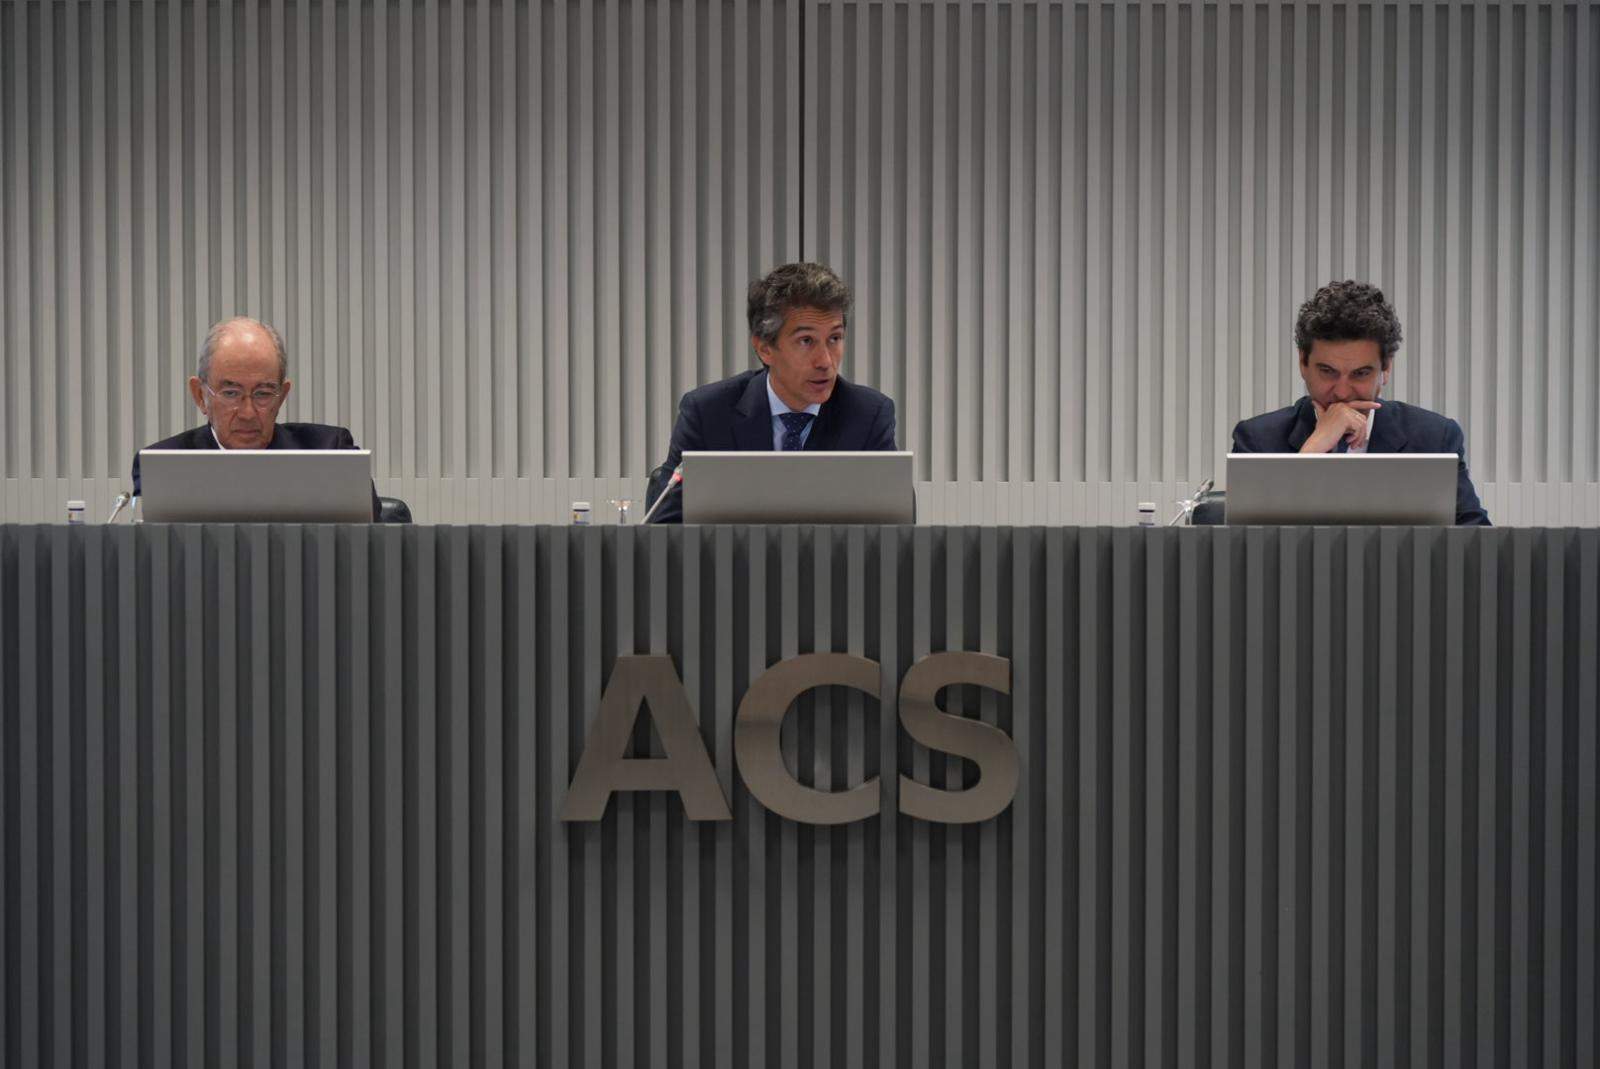 ACS propondrá a su junta la reelección como consejeros dominicales de Javier Echenique y Mariano Hérnandez